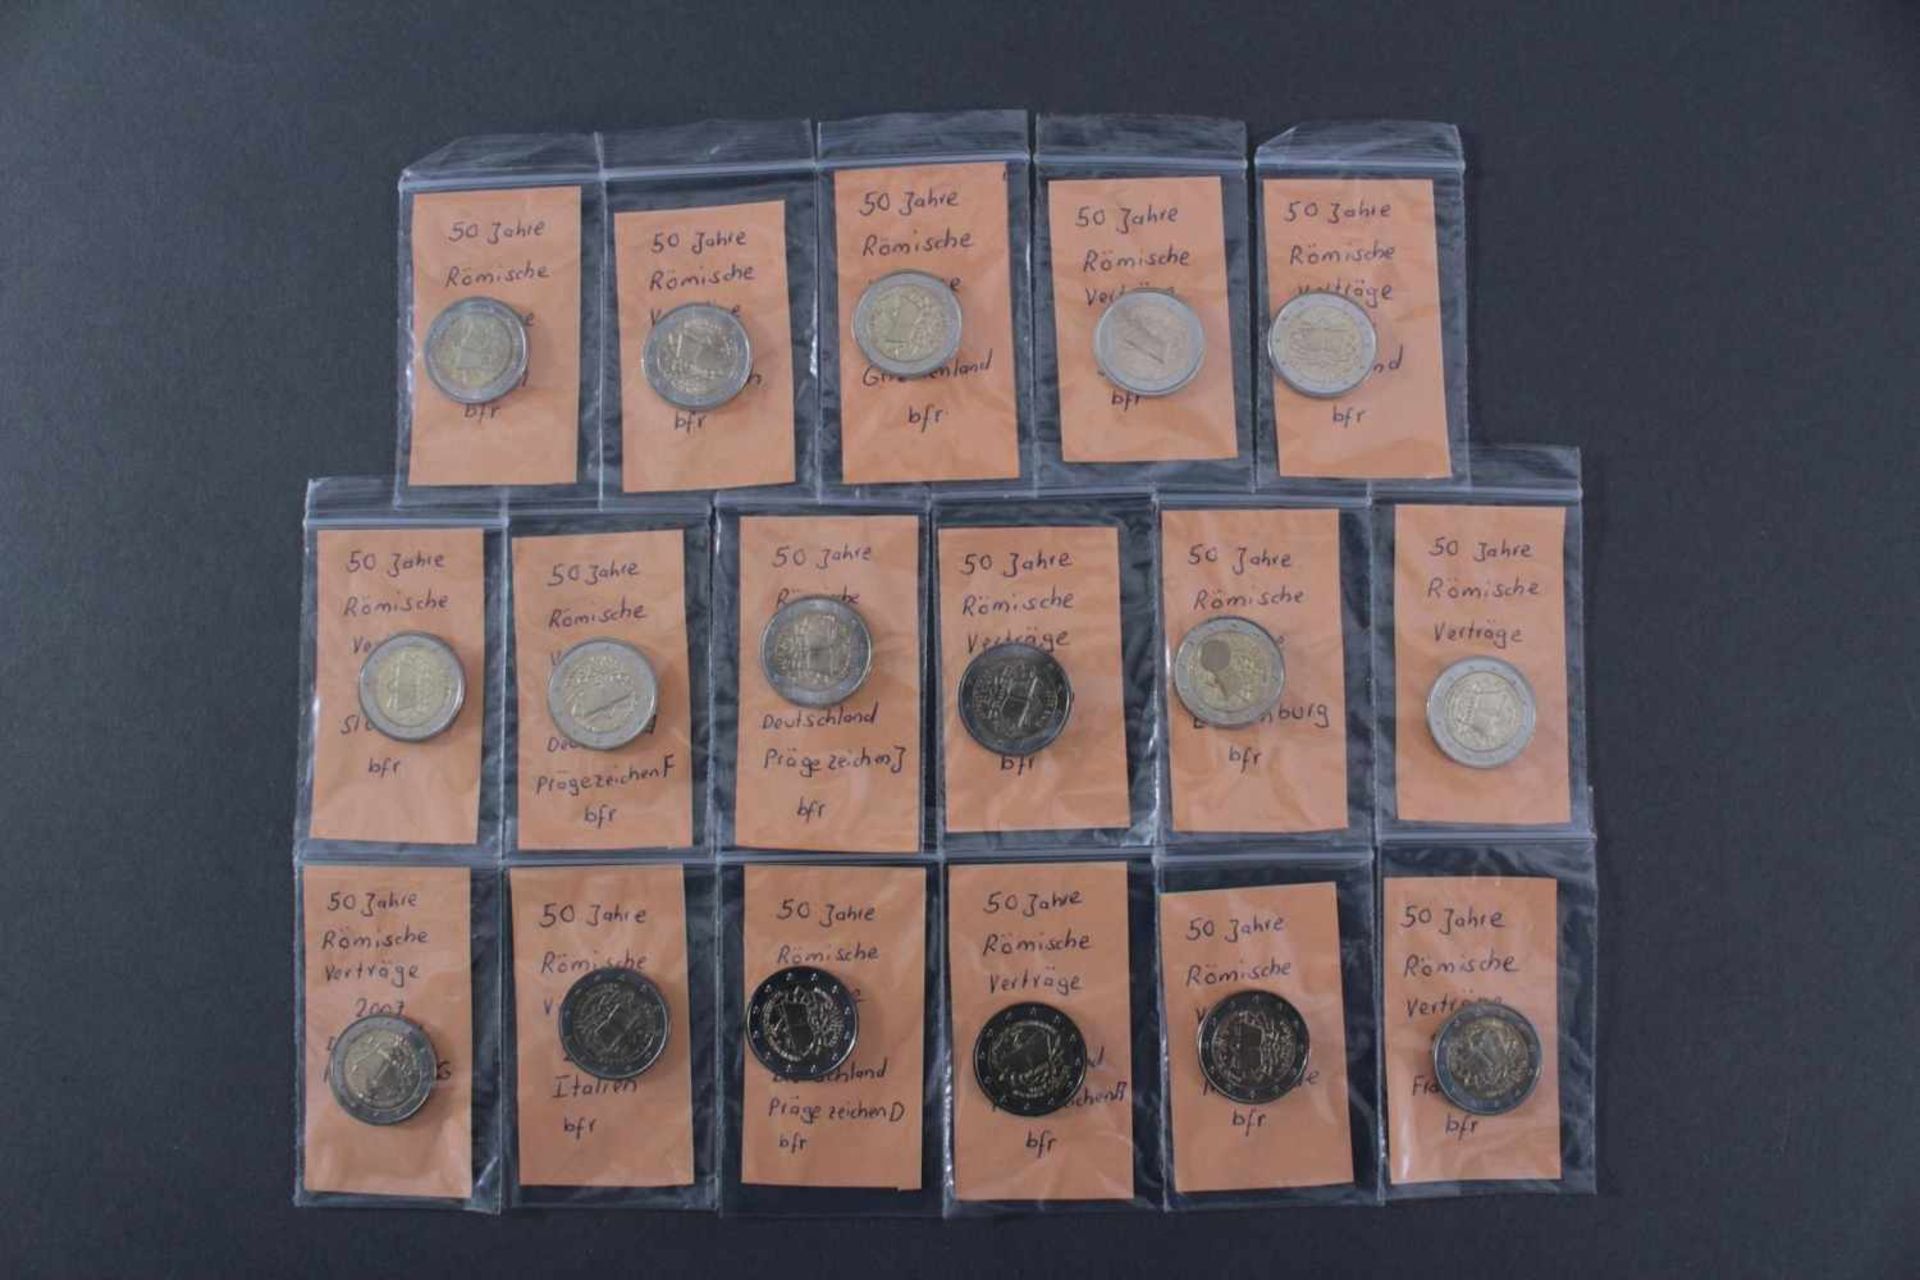 2 Euro 2007 - 50 Jahre Römische VerträgeAlle 17 Münzen (13 Länder, wobei Deutschland mit allen